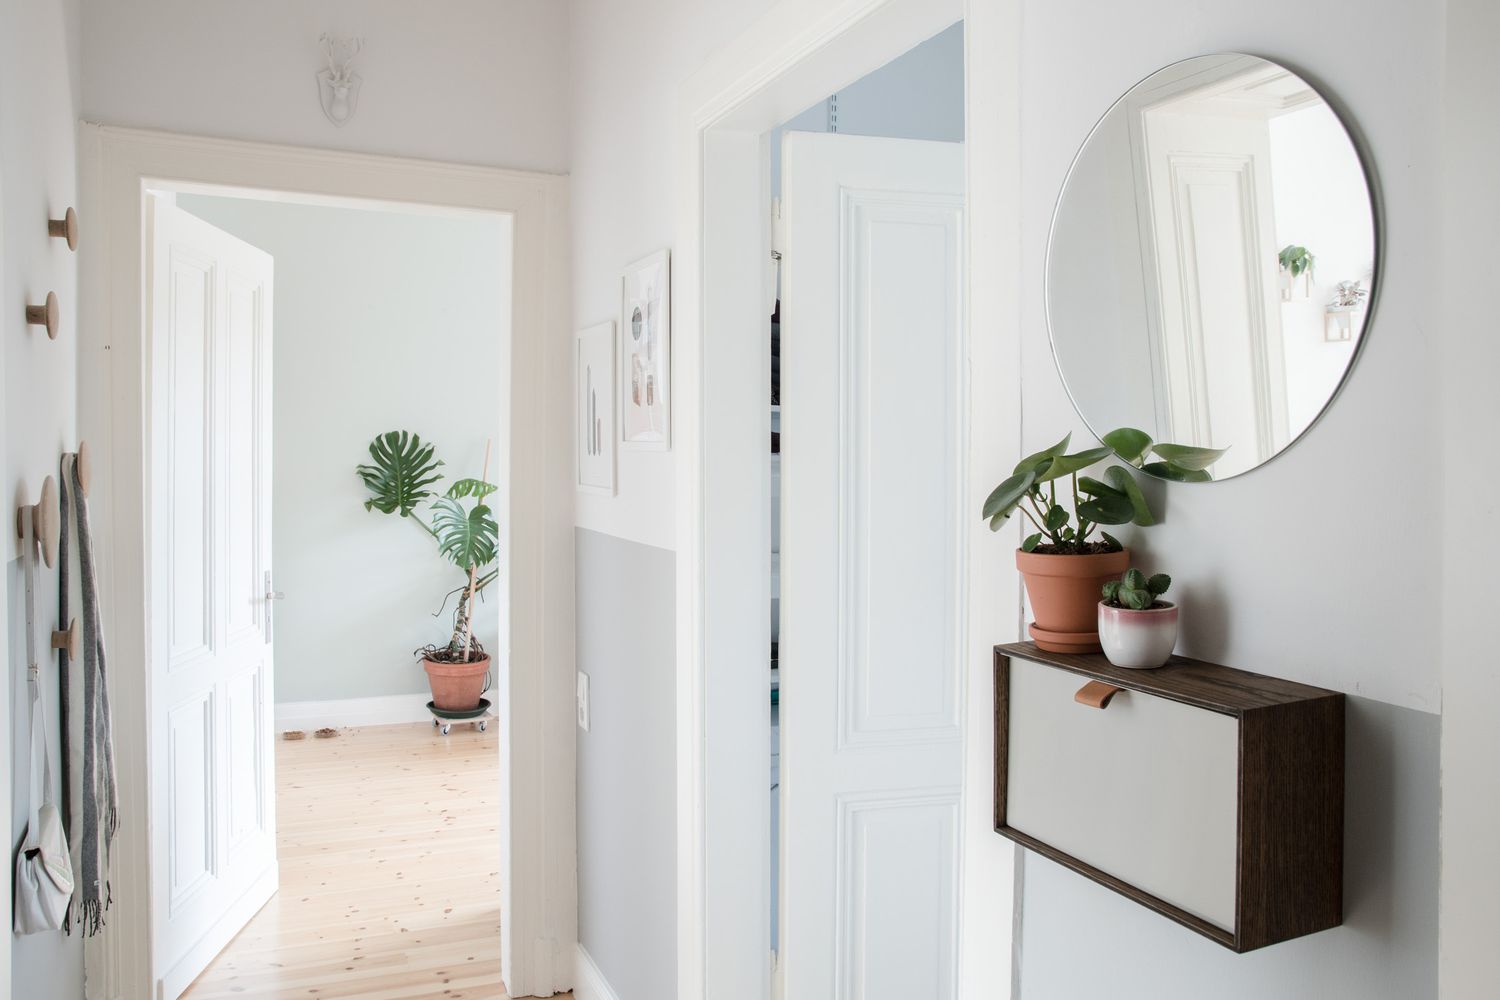 Entrada minimalista con espejo redondo, plantas y almacenaje en la pared